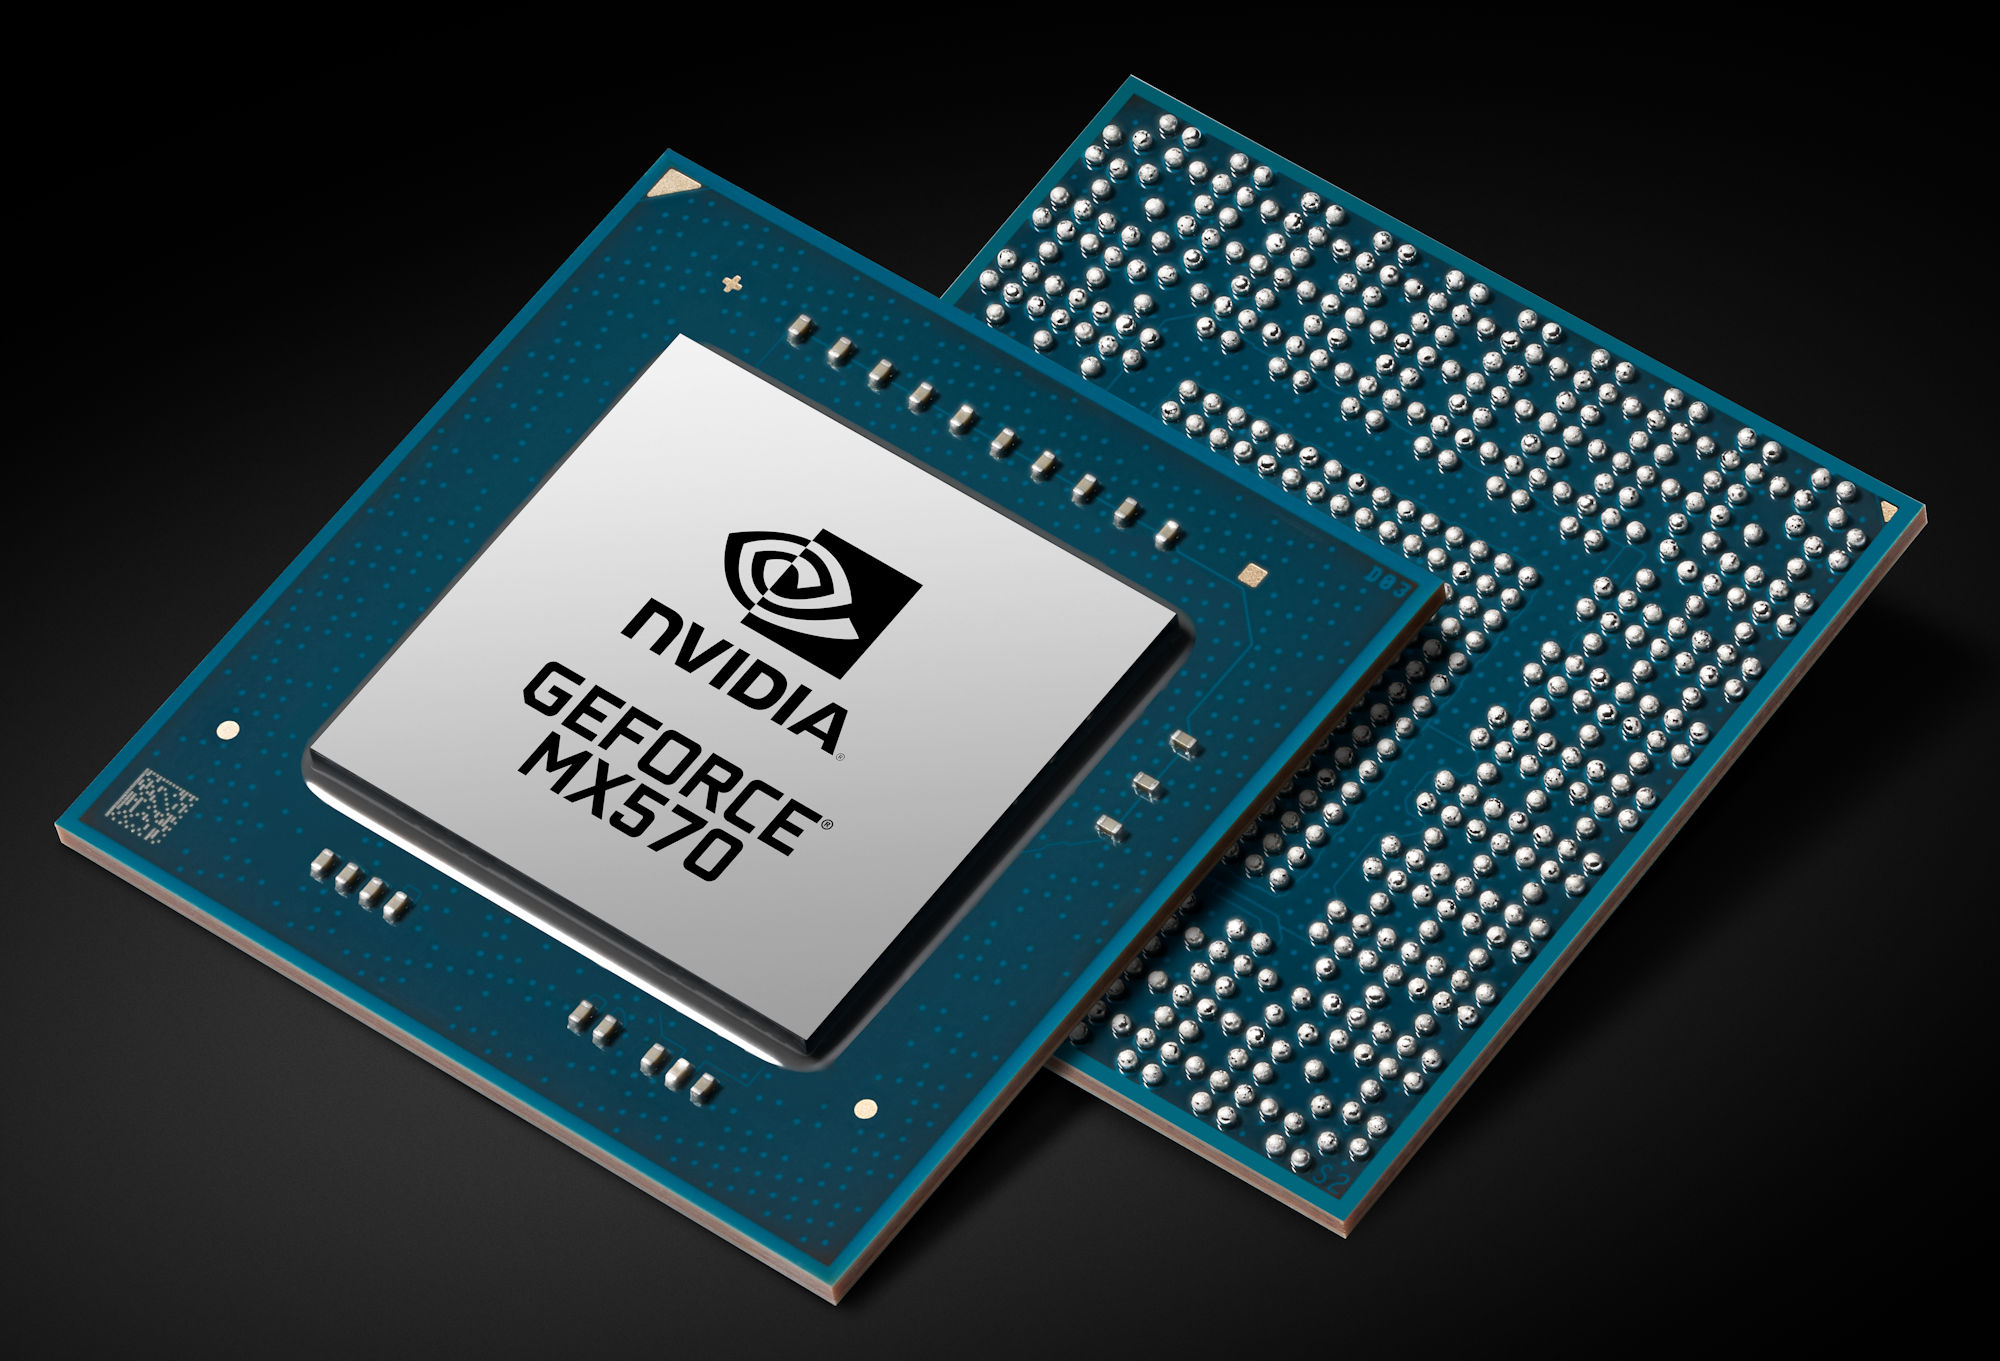 Nvidia có thể sẽ khai tử GPU MX vì card onboard AMD và Intel càng lúc càng ổn về hiệu năng